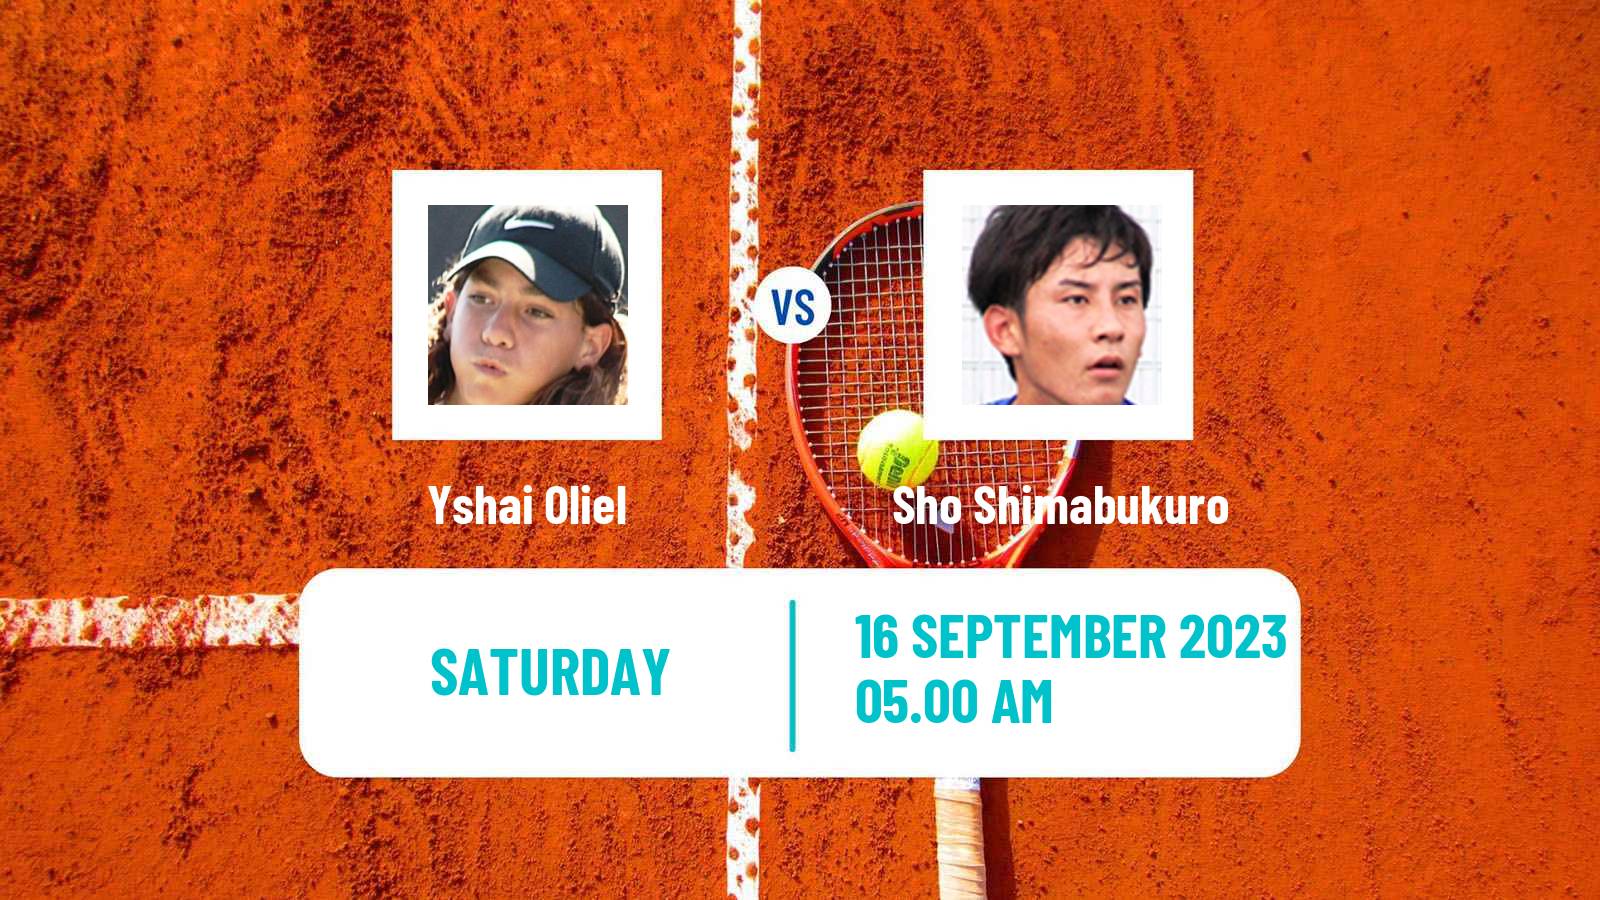 Tennis Davis Cup World Group I Yshai Oliel - Sho Shimabukuro